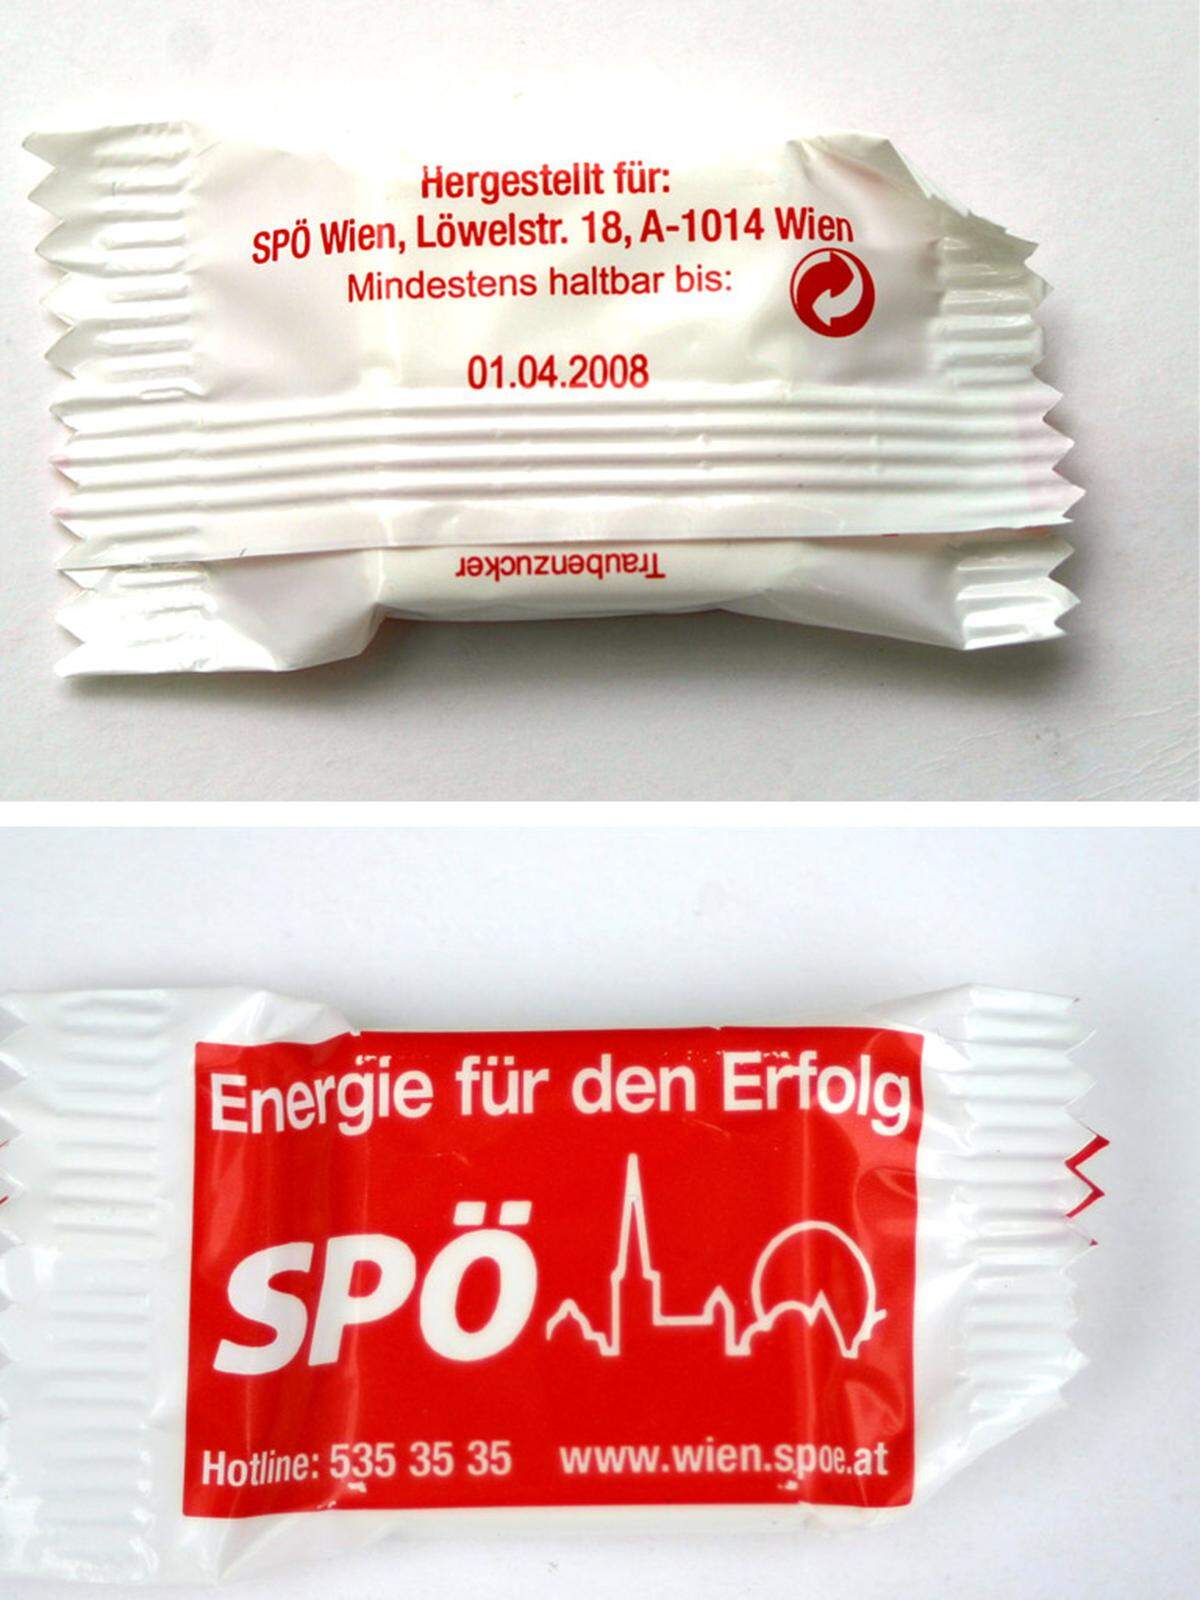 Die Freiheitlichen machen sich über den von den Sozialdemokraten verteilten Traubenzucker lustig. Die von der SPÖ verteilten "Wahlzuckerl" sind seit zwei Jahren abgelaufen. "Das ist nicht mehr lustig, das gefährdet die Gesundheit der Wiener", sagt dazu FPÖ-Landesparteisekretär Hans-Jörg Jenewein.